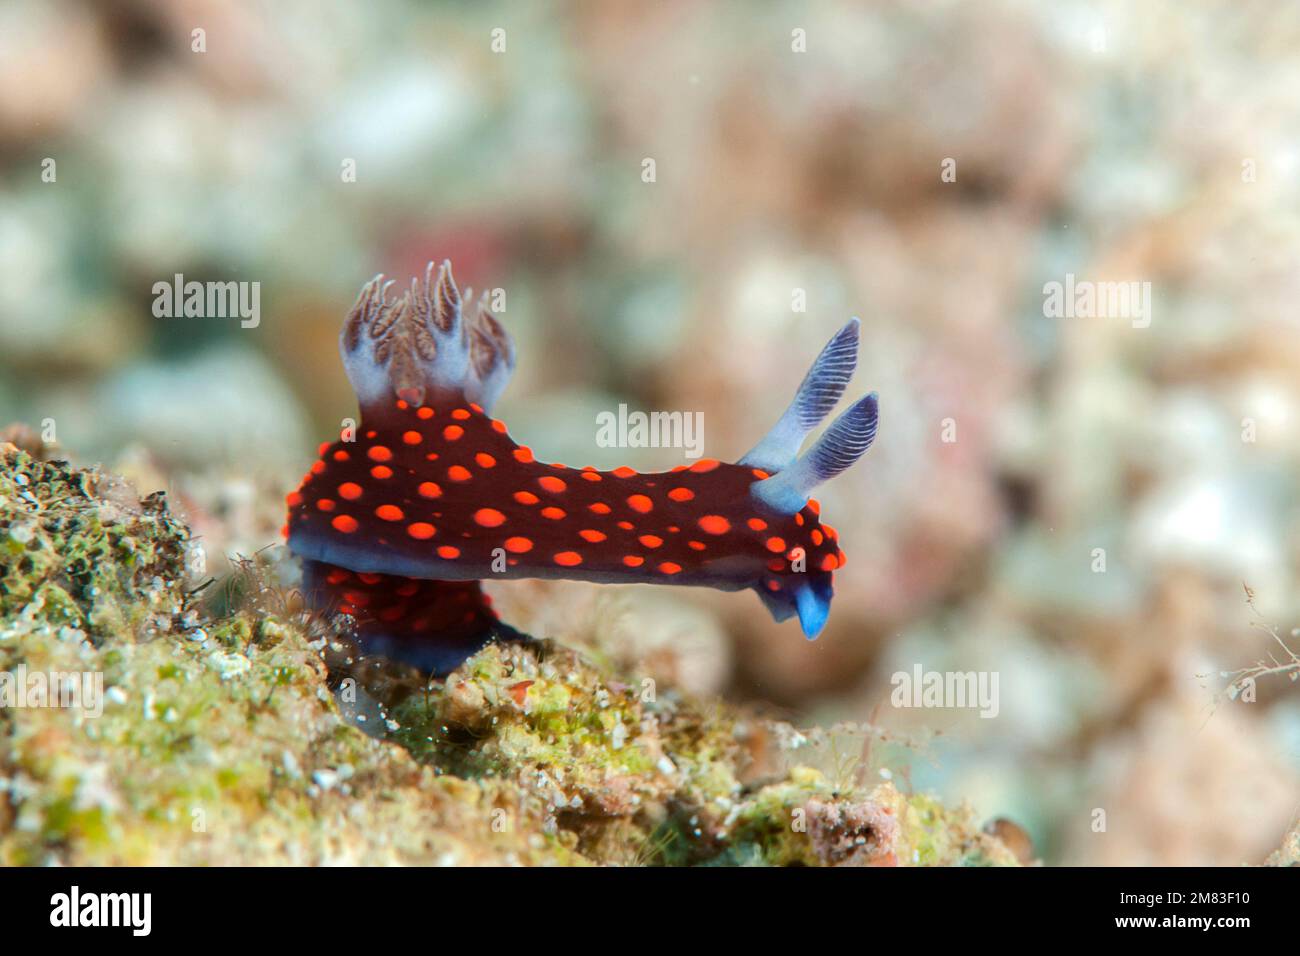 Nembrotha yonowae ( limaces de mer , nudibranche doride, mollusque de gastropode marine de la famille des Polyceridae ) se nourrissant des coraux de Bali, Indonésie Banque D'Images